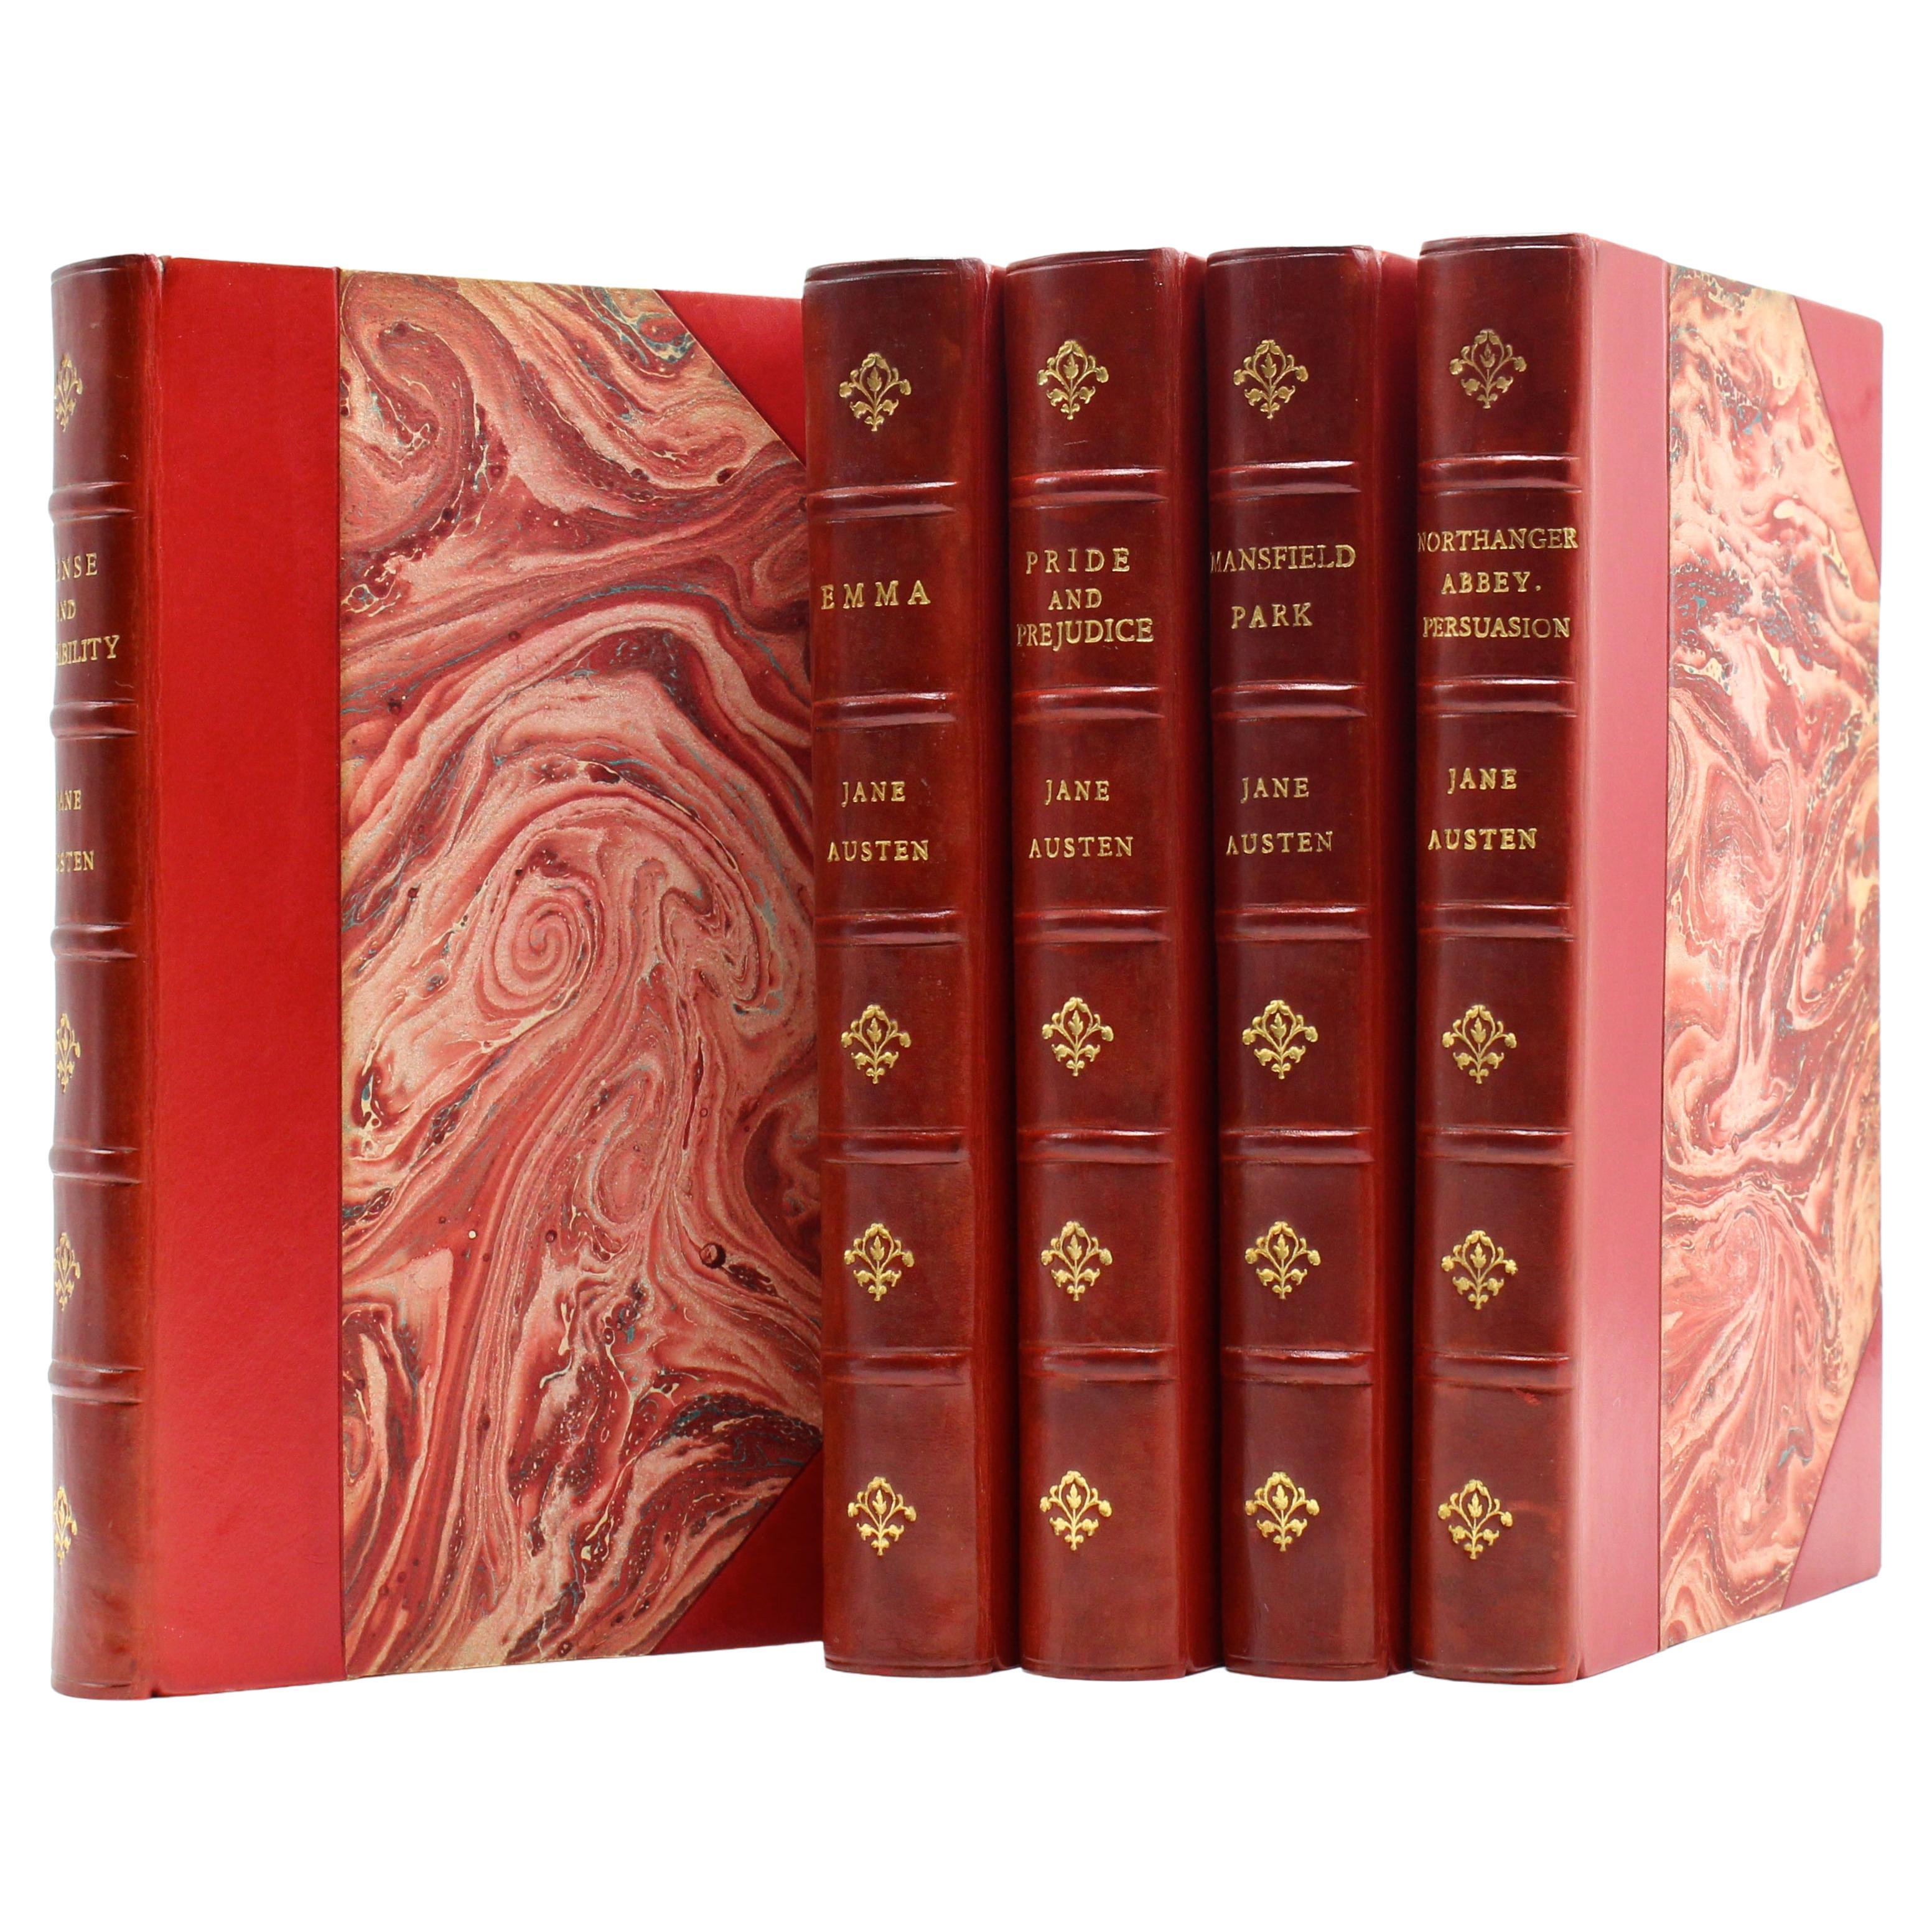 Jane Austen's Werke, herausgegeben von Robert Riviere & Son, fünf Bände, 1920er Jahre